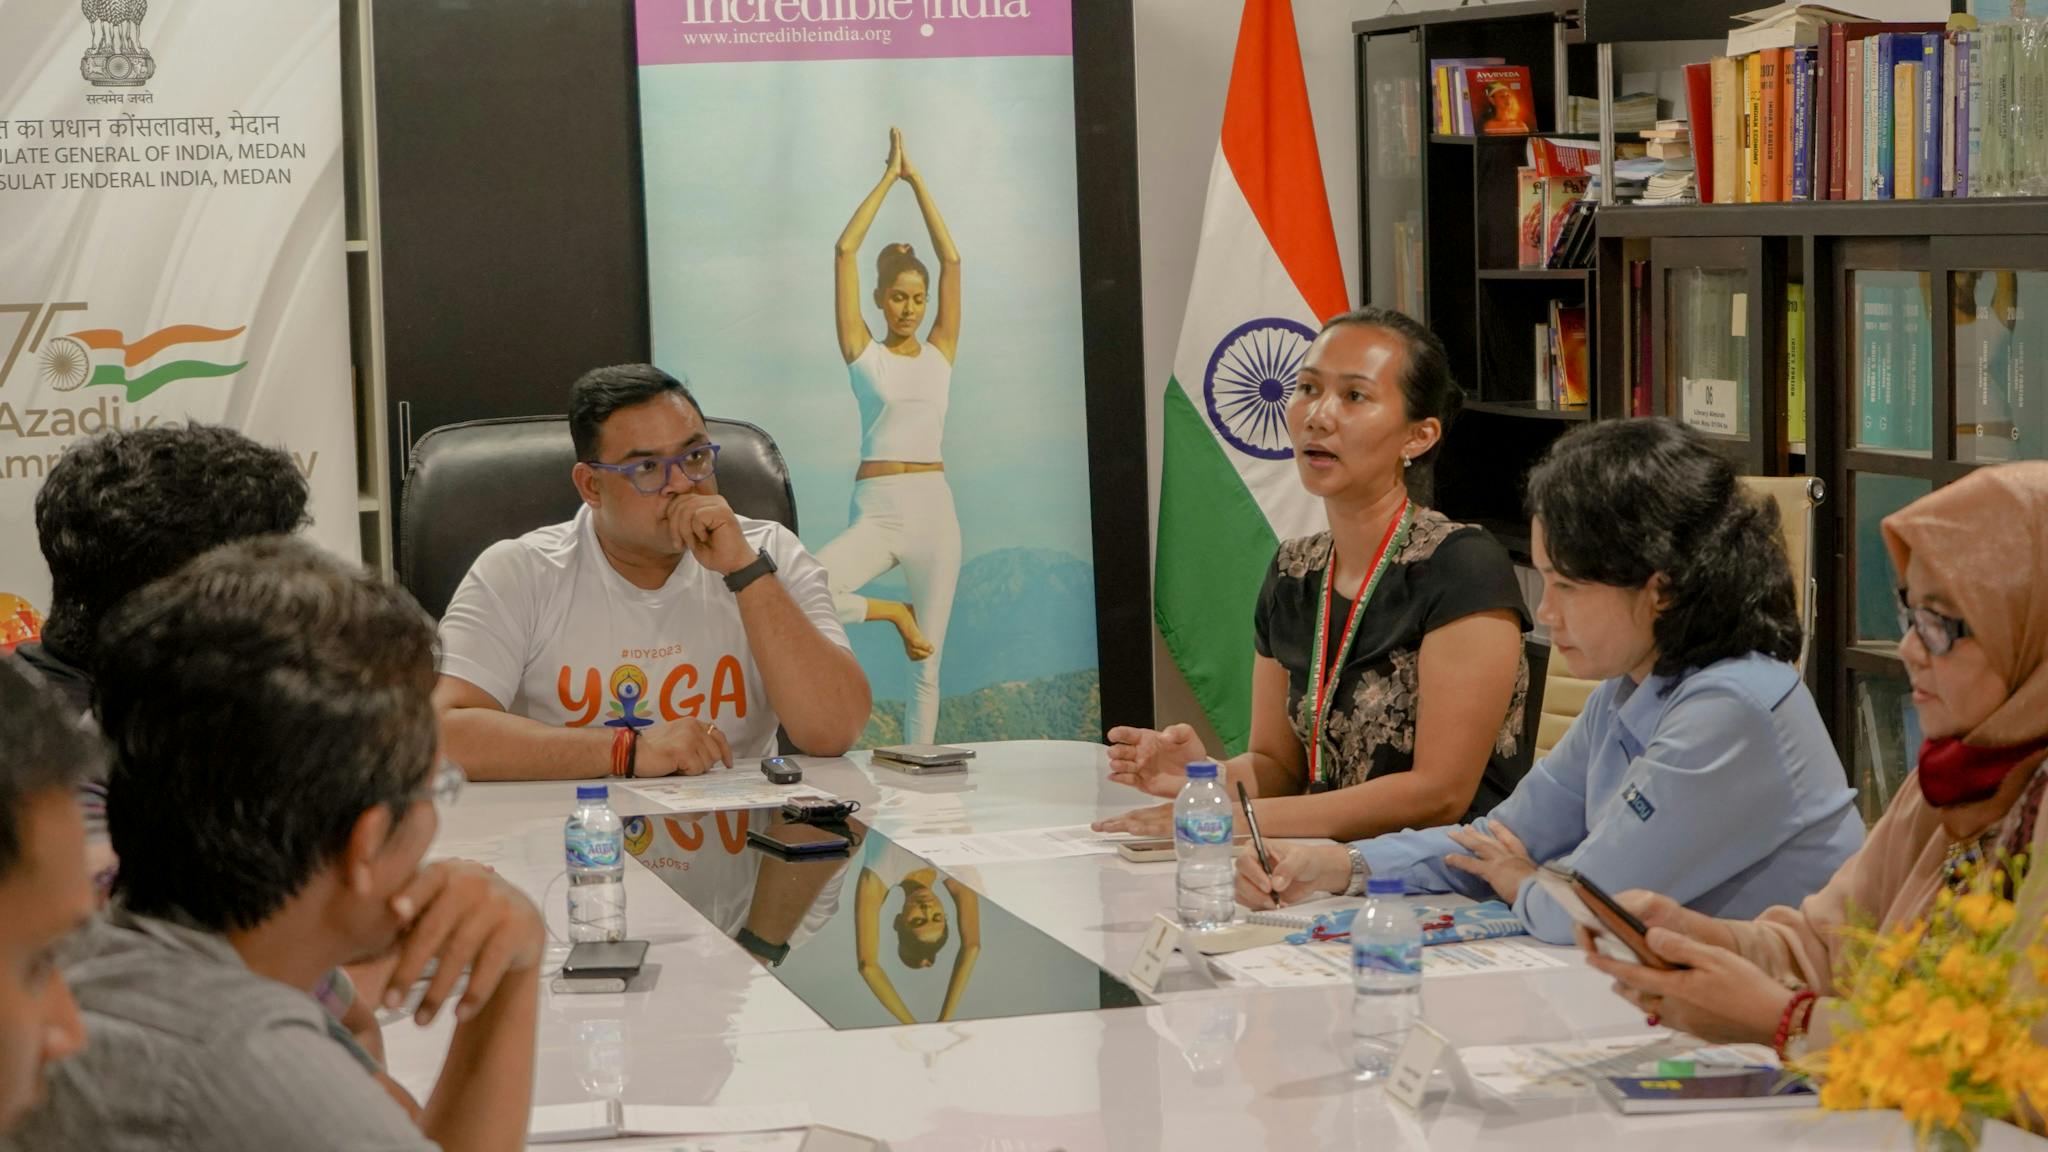 [Press Conference] Rayakan Hari Yoga Internasional Ke-9 Konjen India di Medan Bersama PT Nirvana Indonesia Yoga Akan Mendatangkan Anjasmara